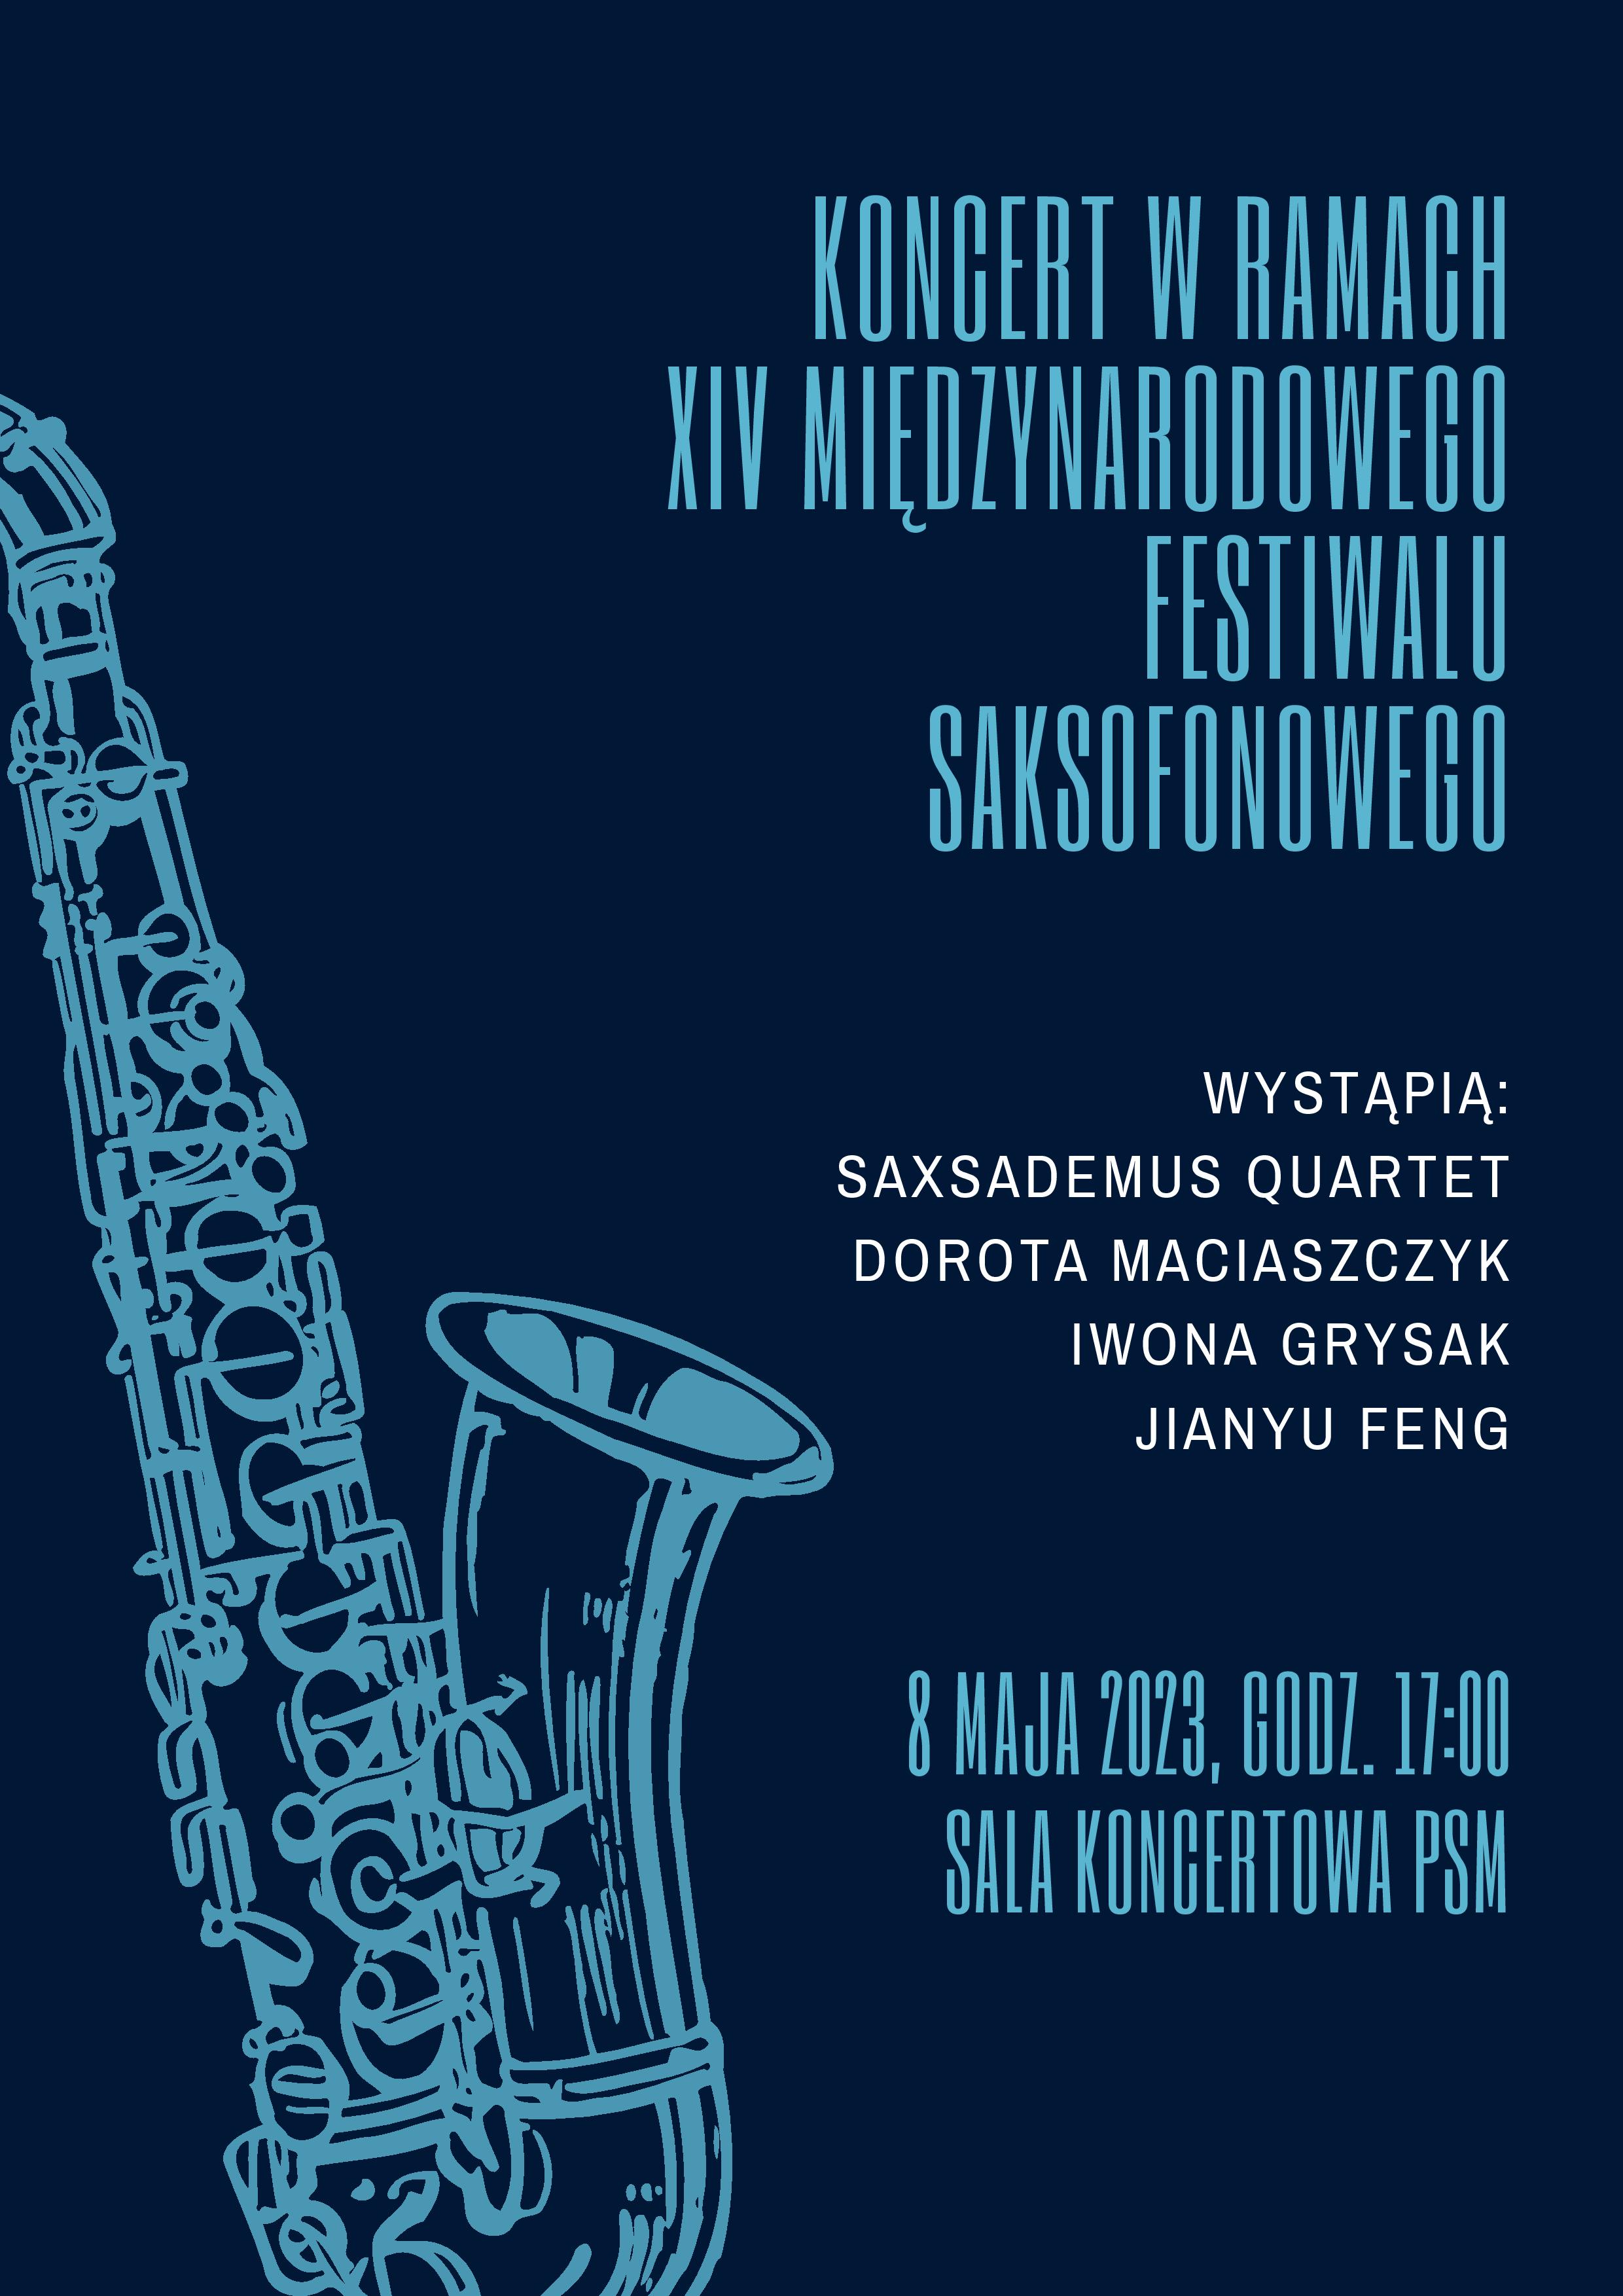 Plakat informujący o koncercie w ramach XIV Międzynarodowego Festiwalu Saksofonowego 8 maja 2023 o godzinie 17. 